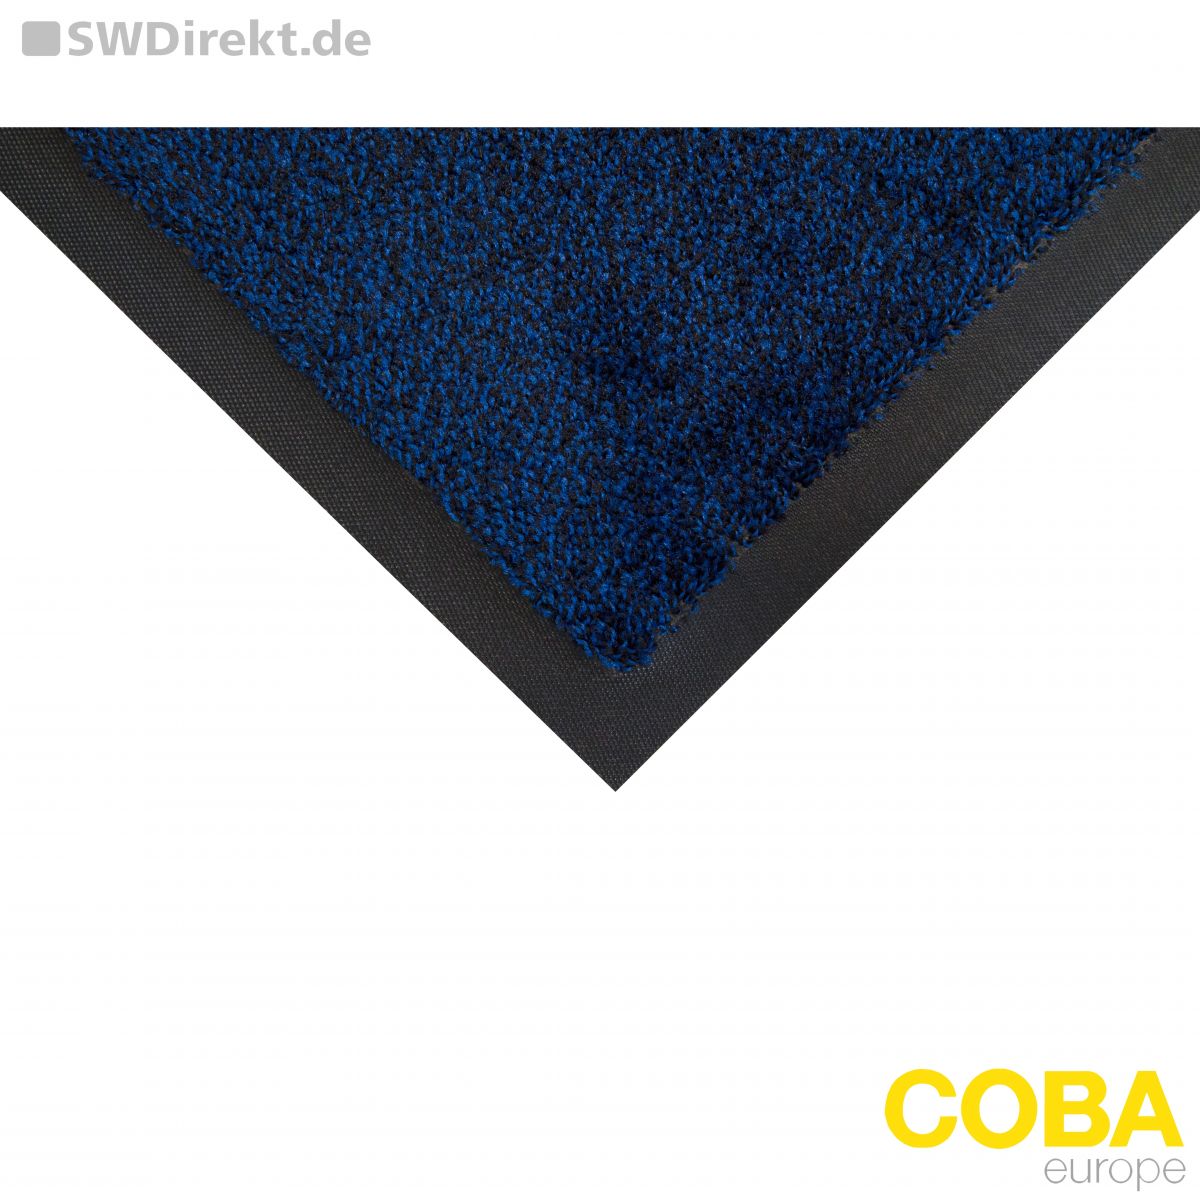 Eingangsmatte Cobawash schwarz/blau